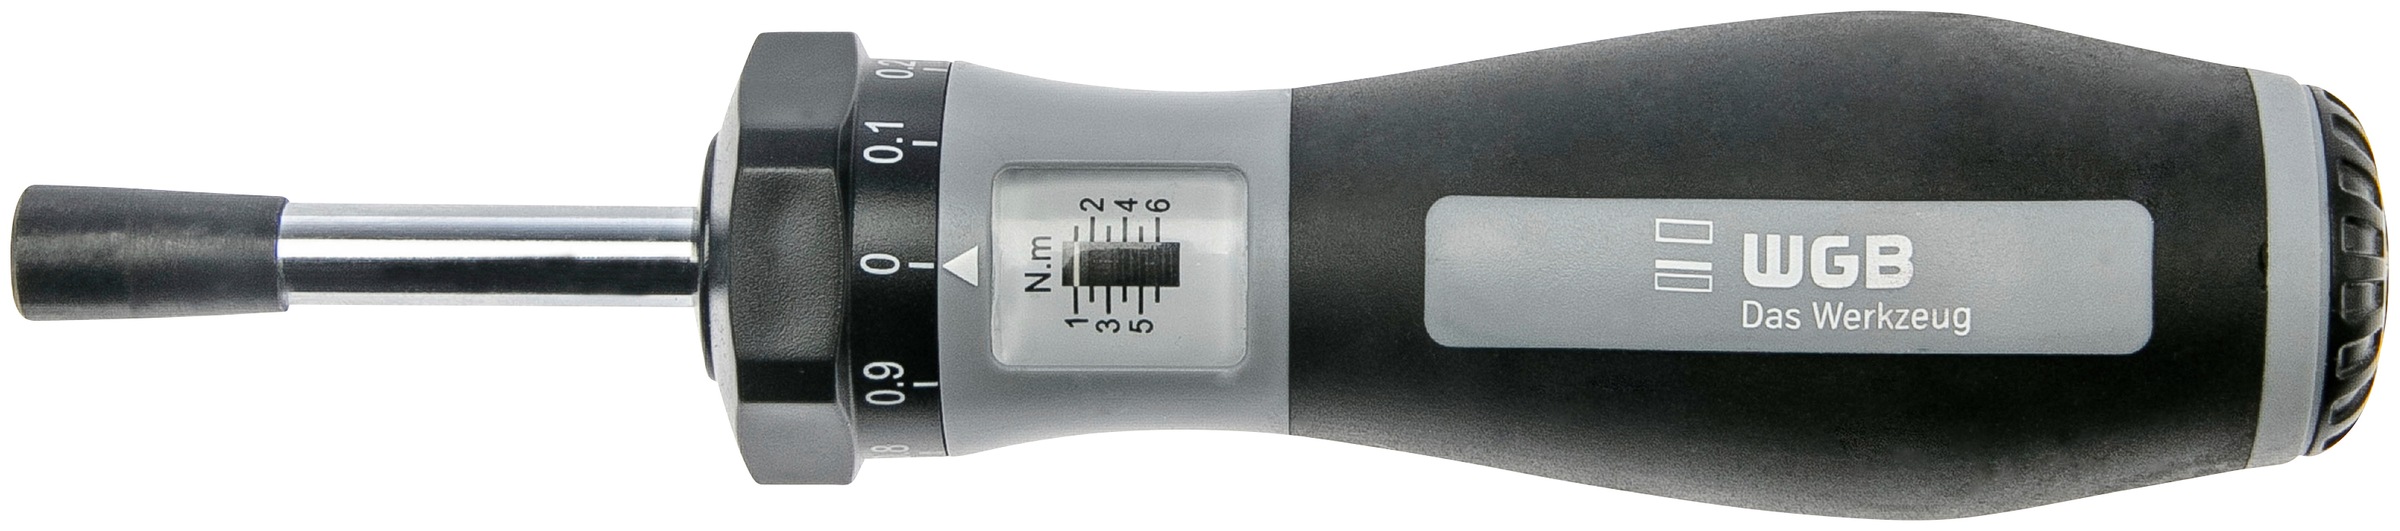 WGB Das Werkzeug Drehmomentschlüssel, Drehmoment von 1 bis 6 Nm online  kaufen